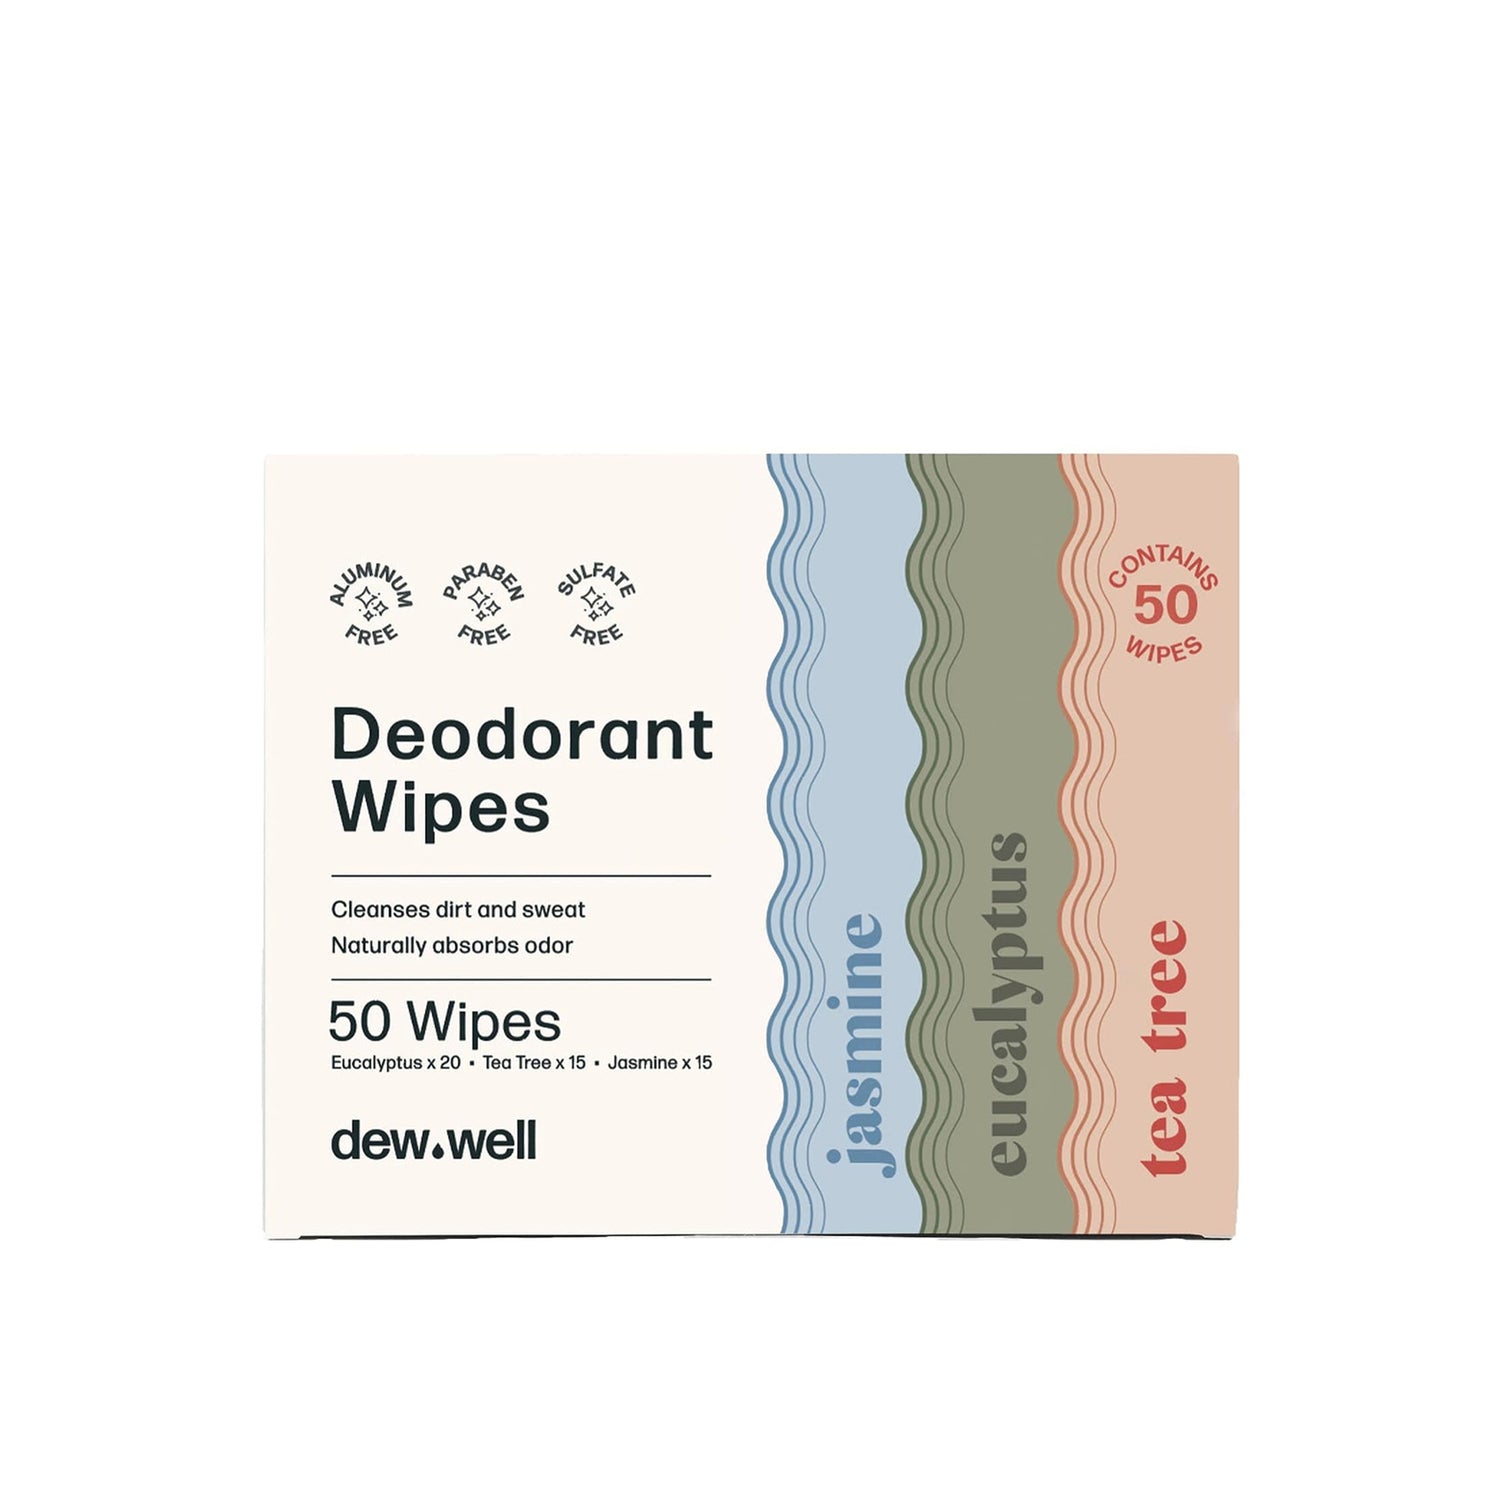 Deodorant Wipes (Tea Tree/Eucalyptus/Jasmine Scent)